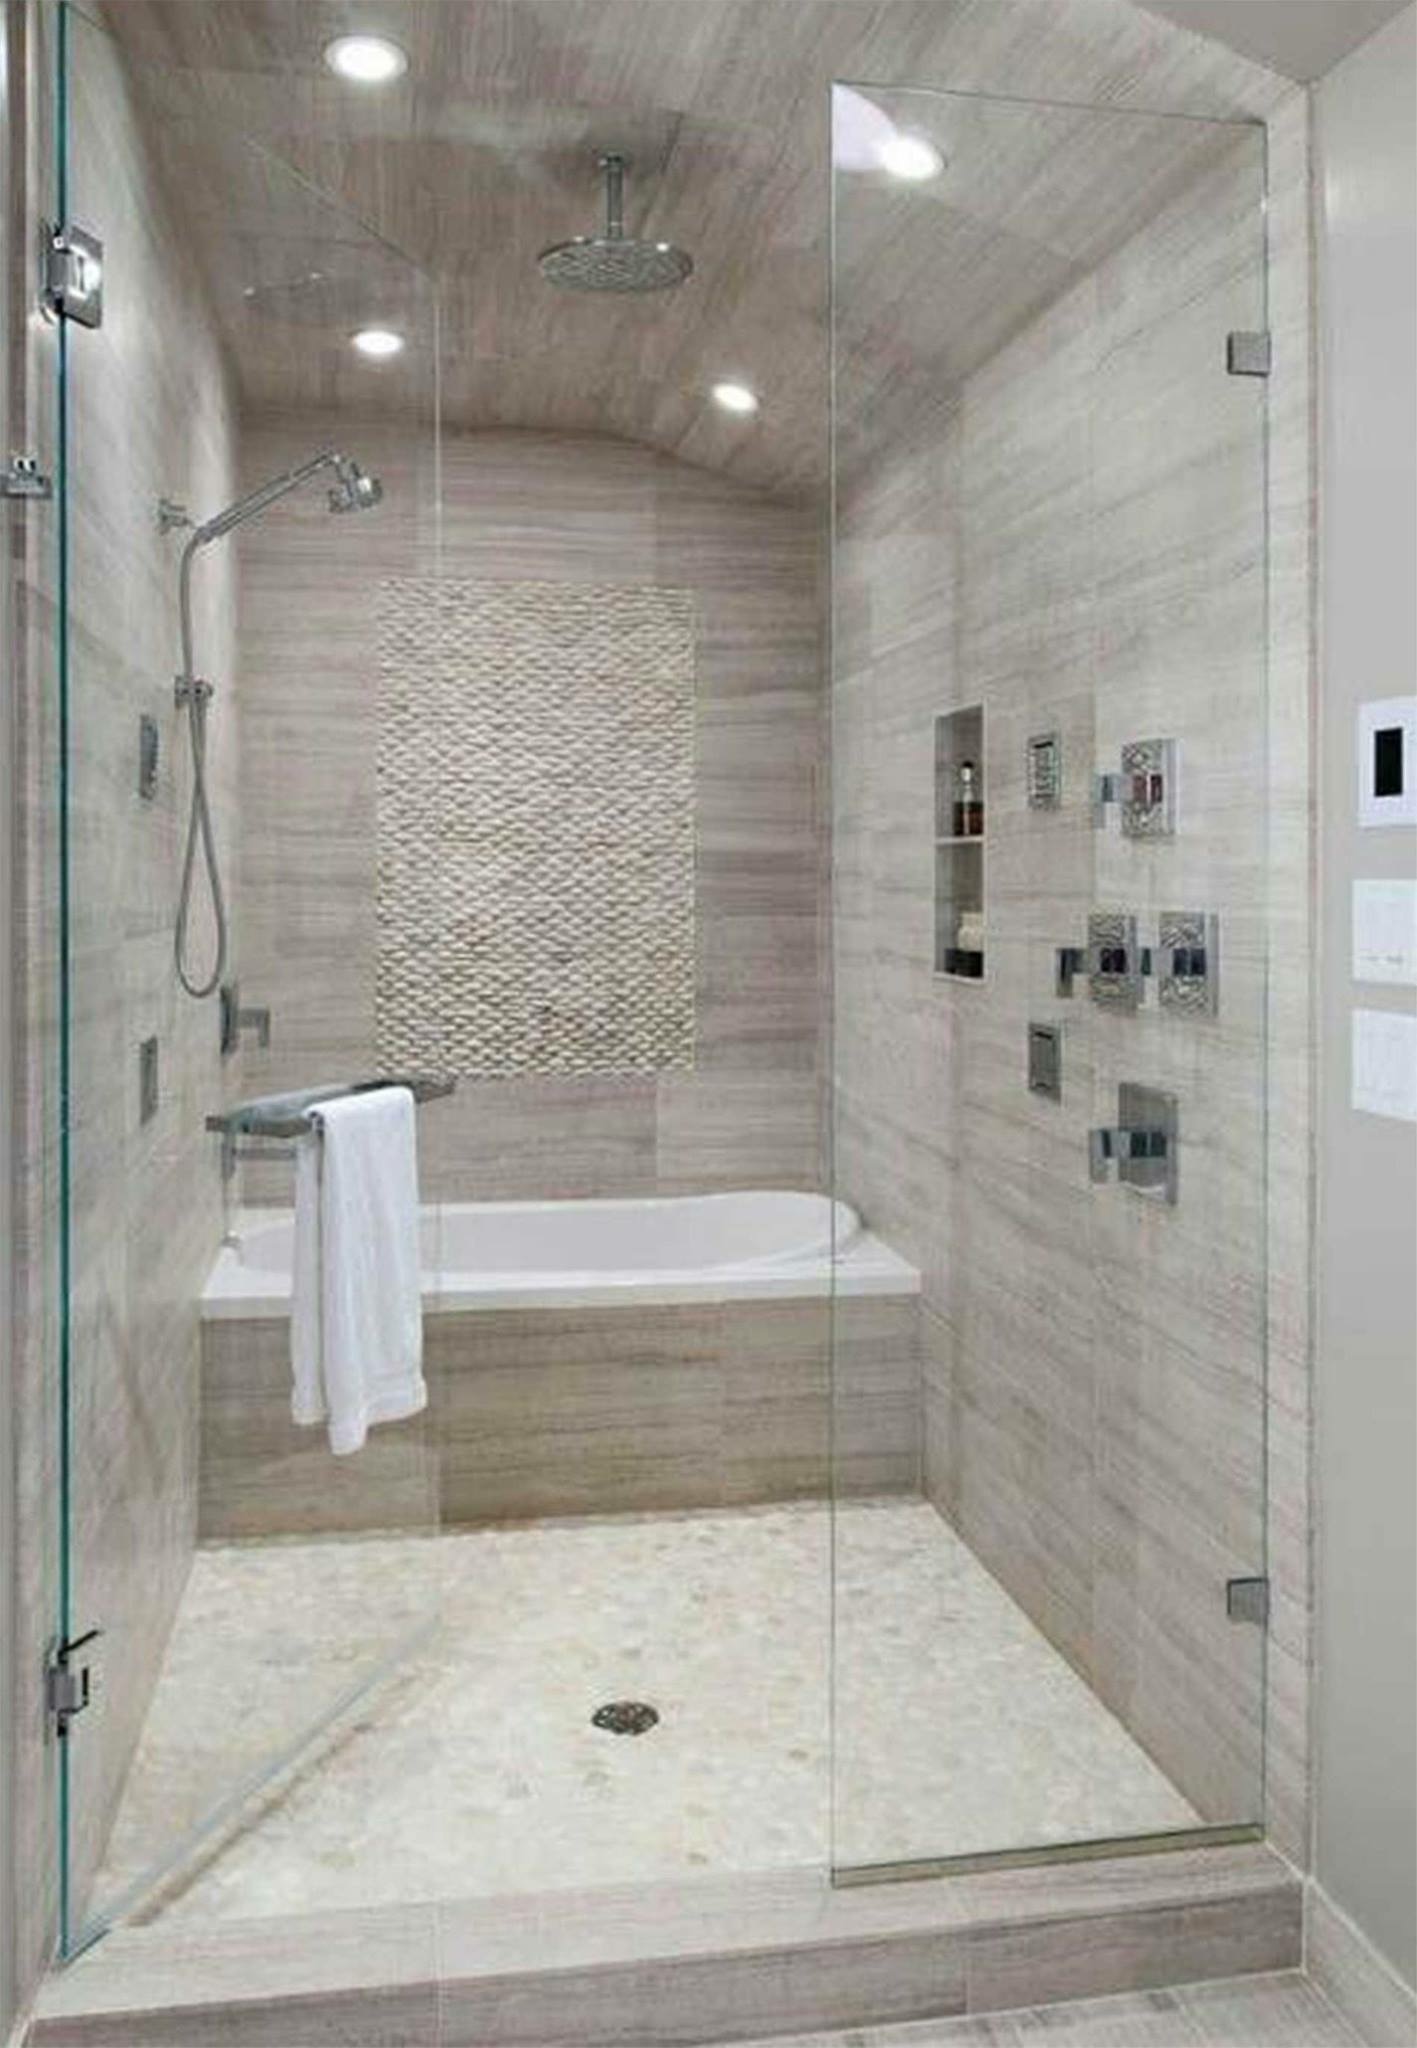 Shower house. Ванная комната с душам. Ванная с душем. Ванная комната с душевой. Современная душевая комната.